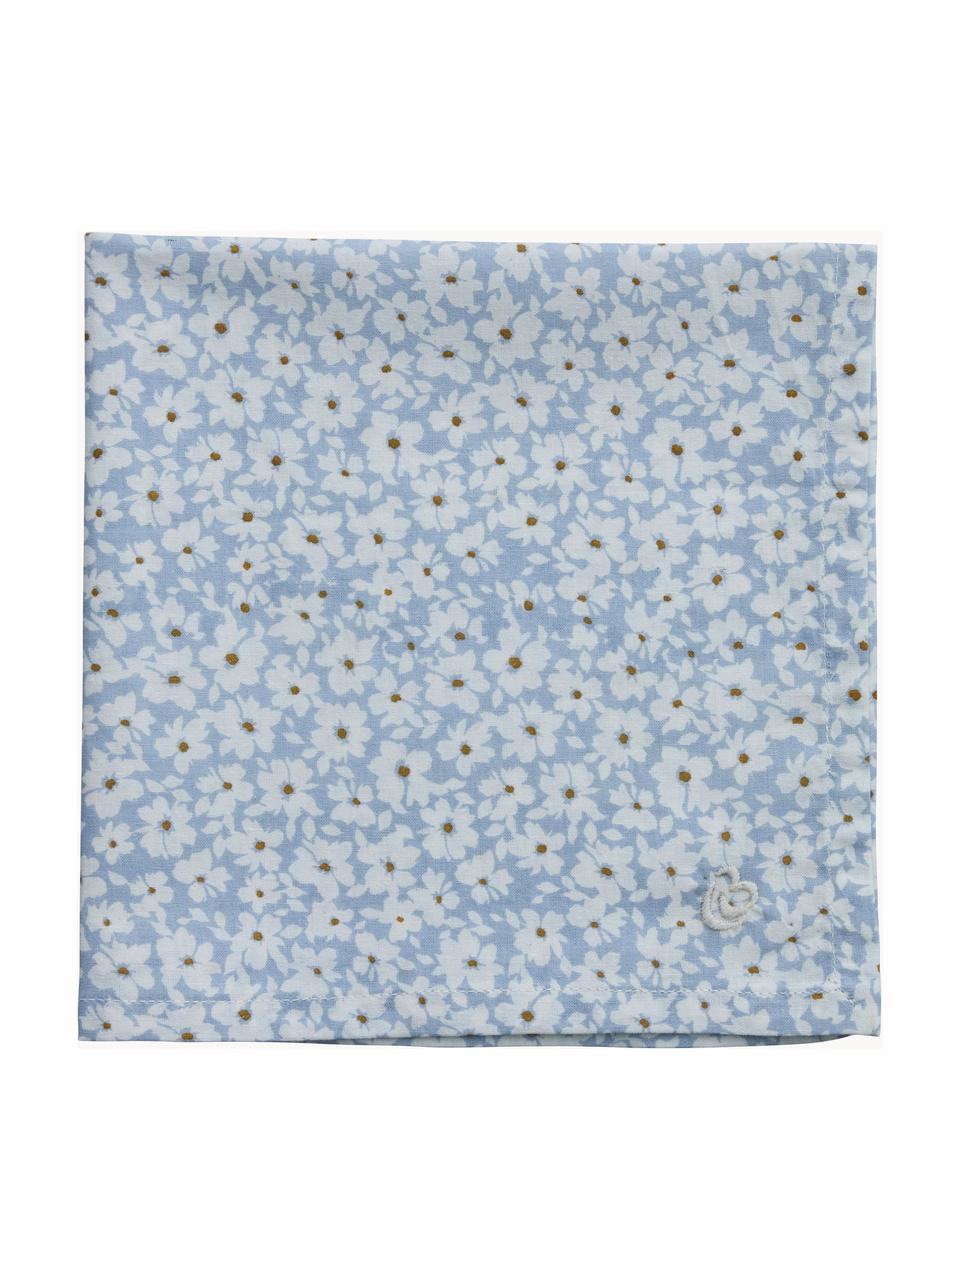 Látkový ubrousek se vzorem květin Liberte, 100 % bavlna, Světle modrá, tlumeně bílá, Š 40 cm, D 40 cm